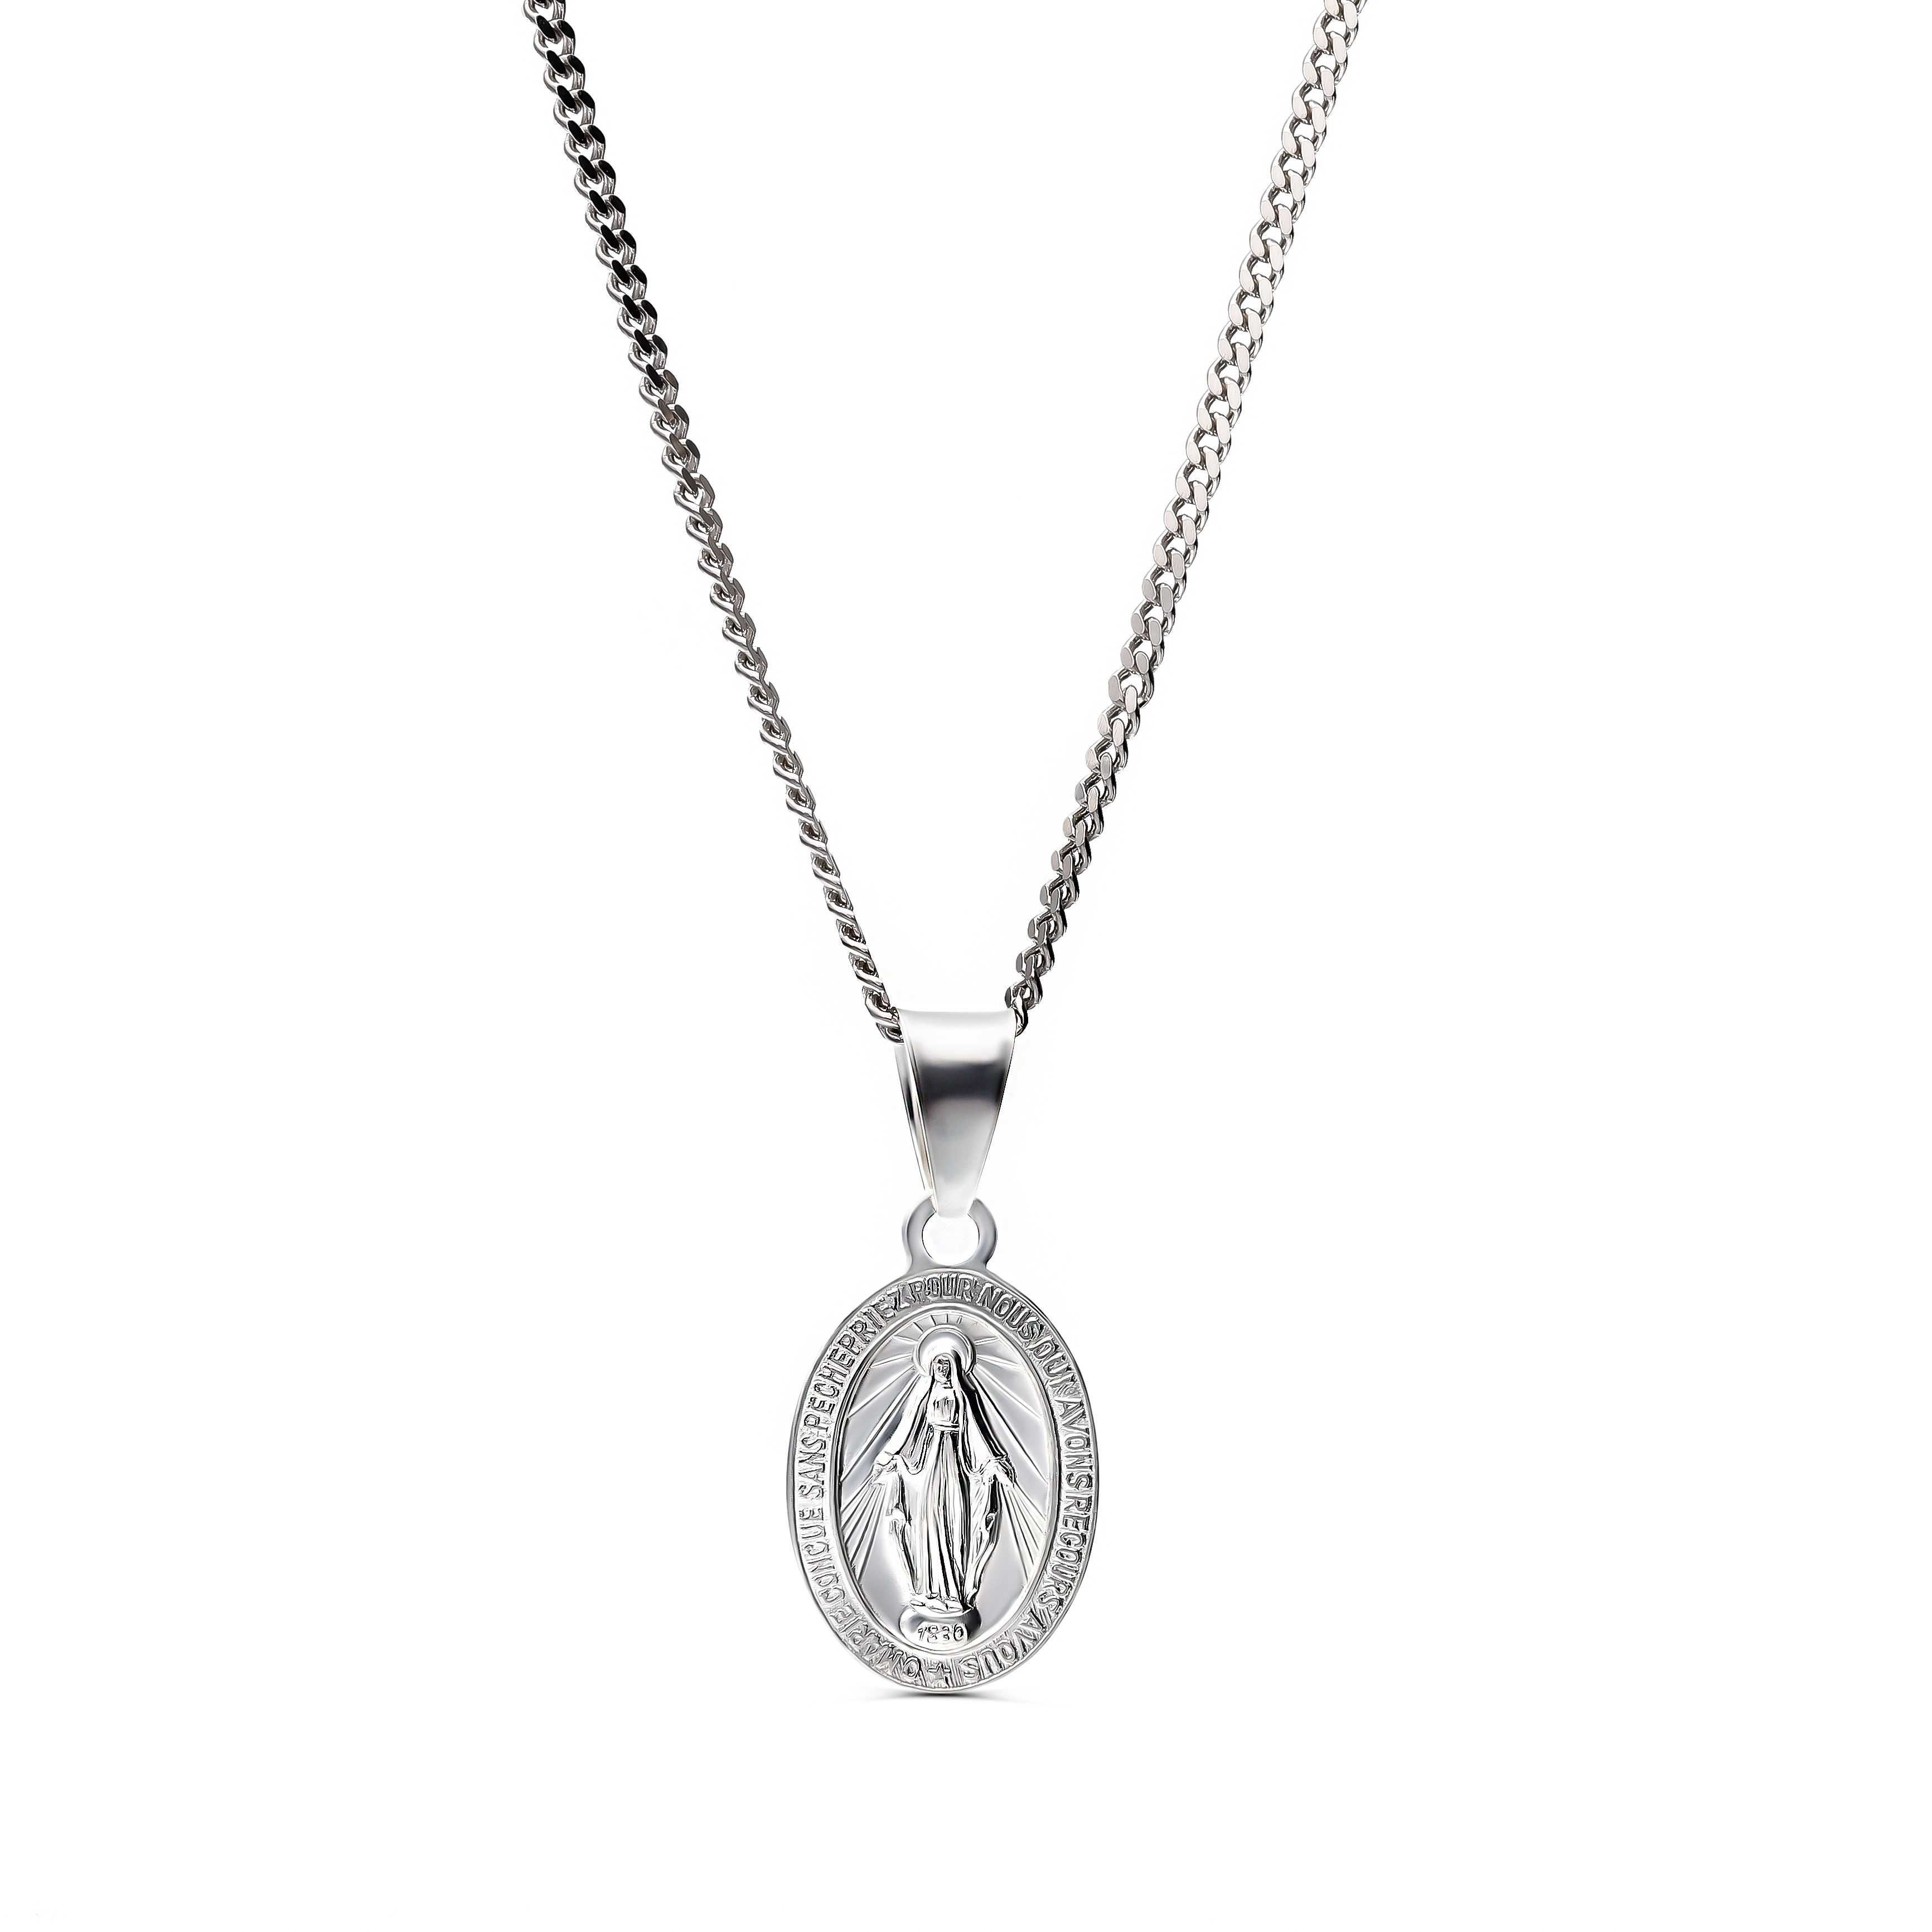 Srebrny cudowny medalik z wizerunkiem Matki Boskiej, próba 925. Cena dotyczy zawieszki.